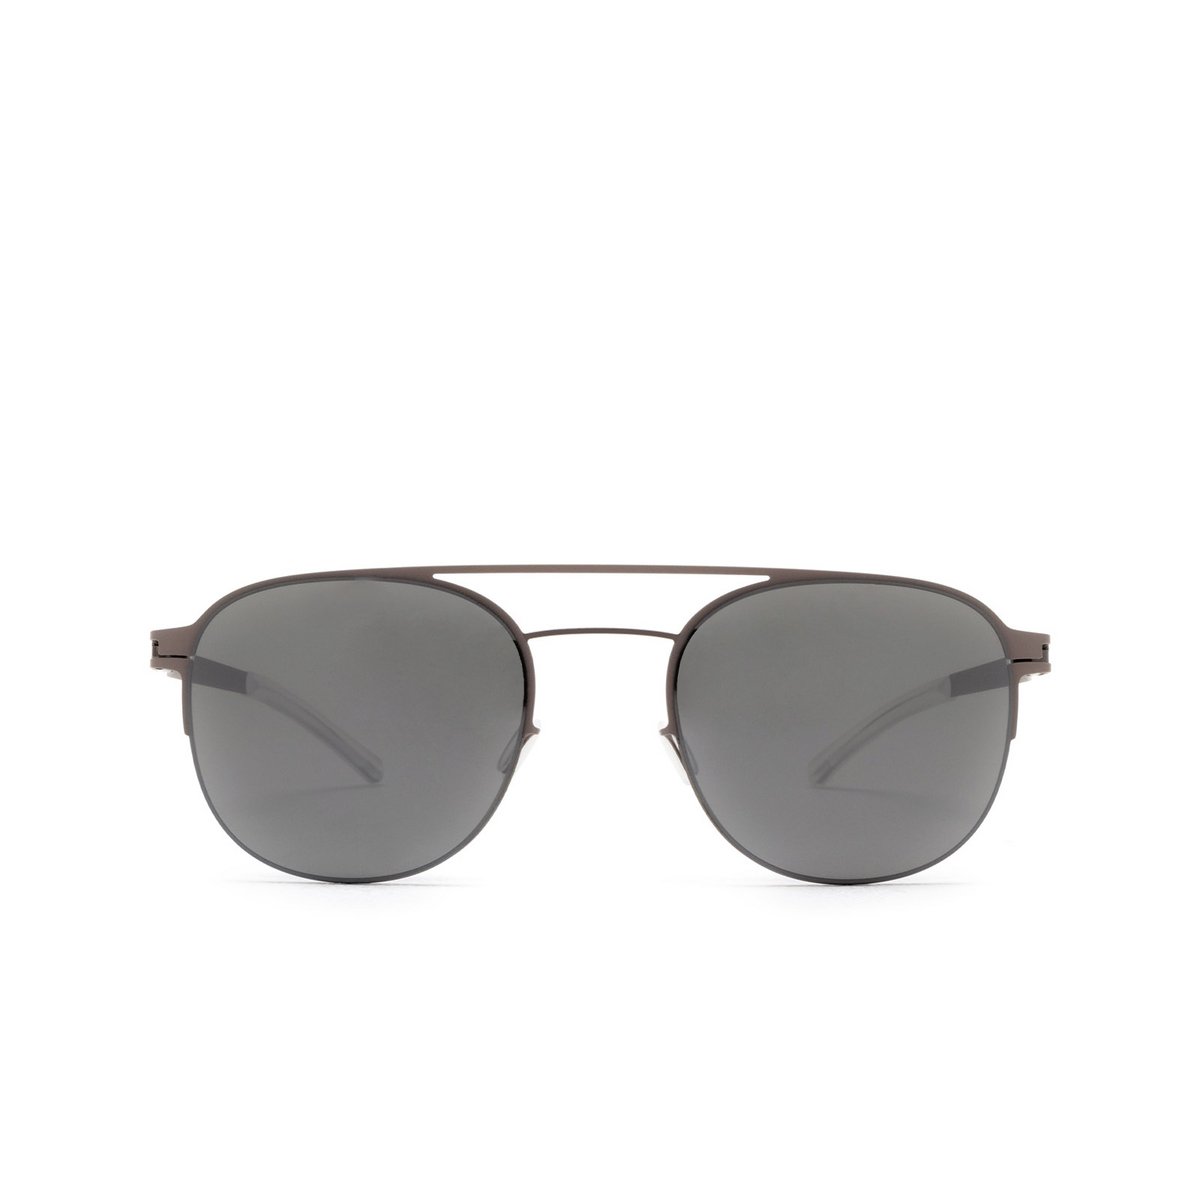 Mykita® Square Sunglasses: Park color 235 Shiny Graphite/mole Grey - front view